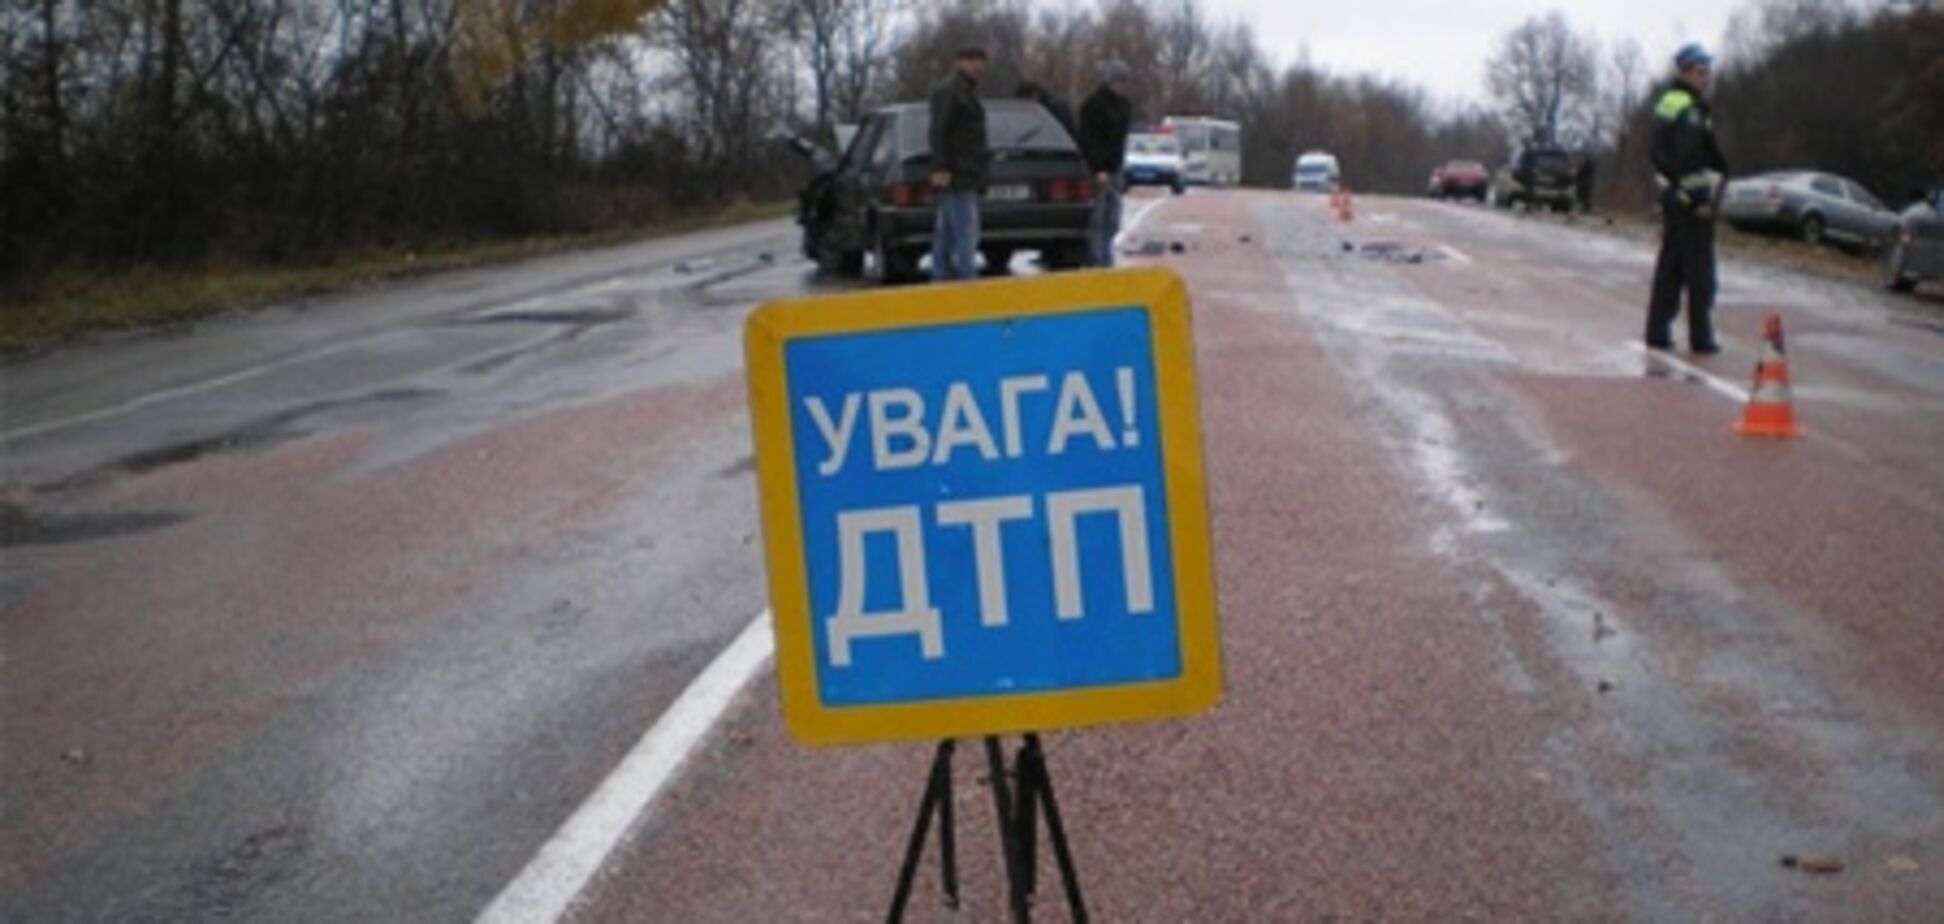 Турист на иномарке покалечил пьяного пешехода в Крыму